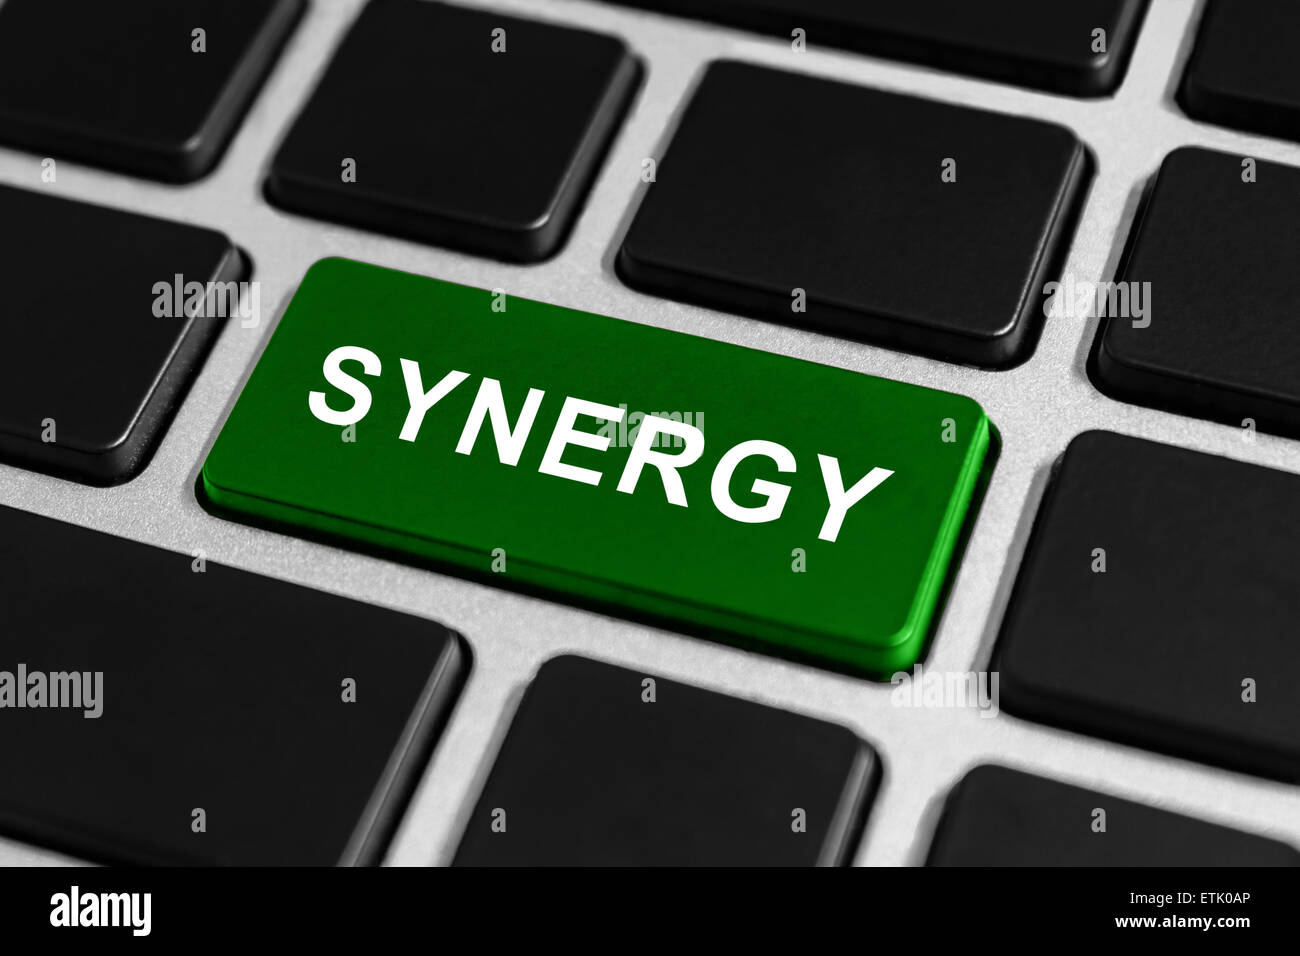 Synergie touche verte de clavier, concept d'entreprise Banque D'Images